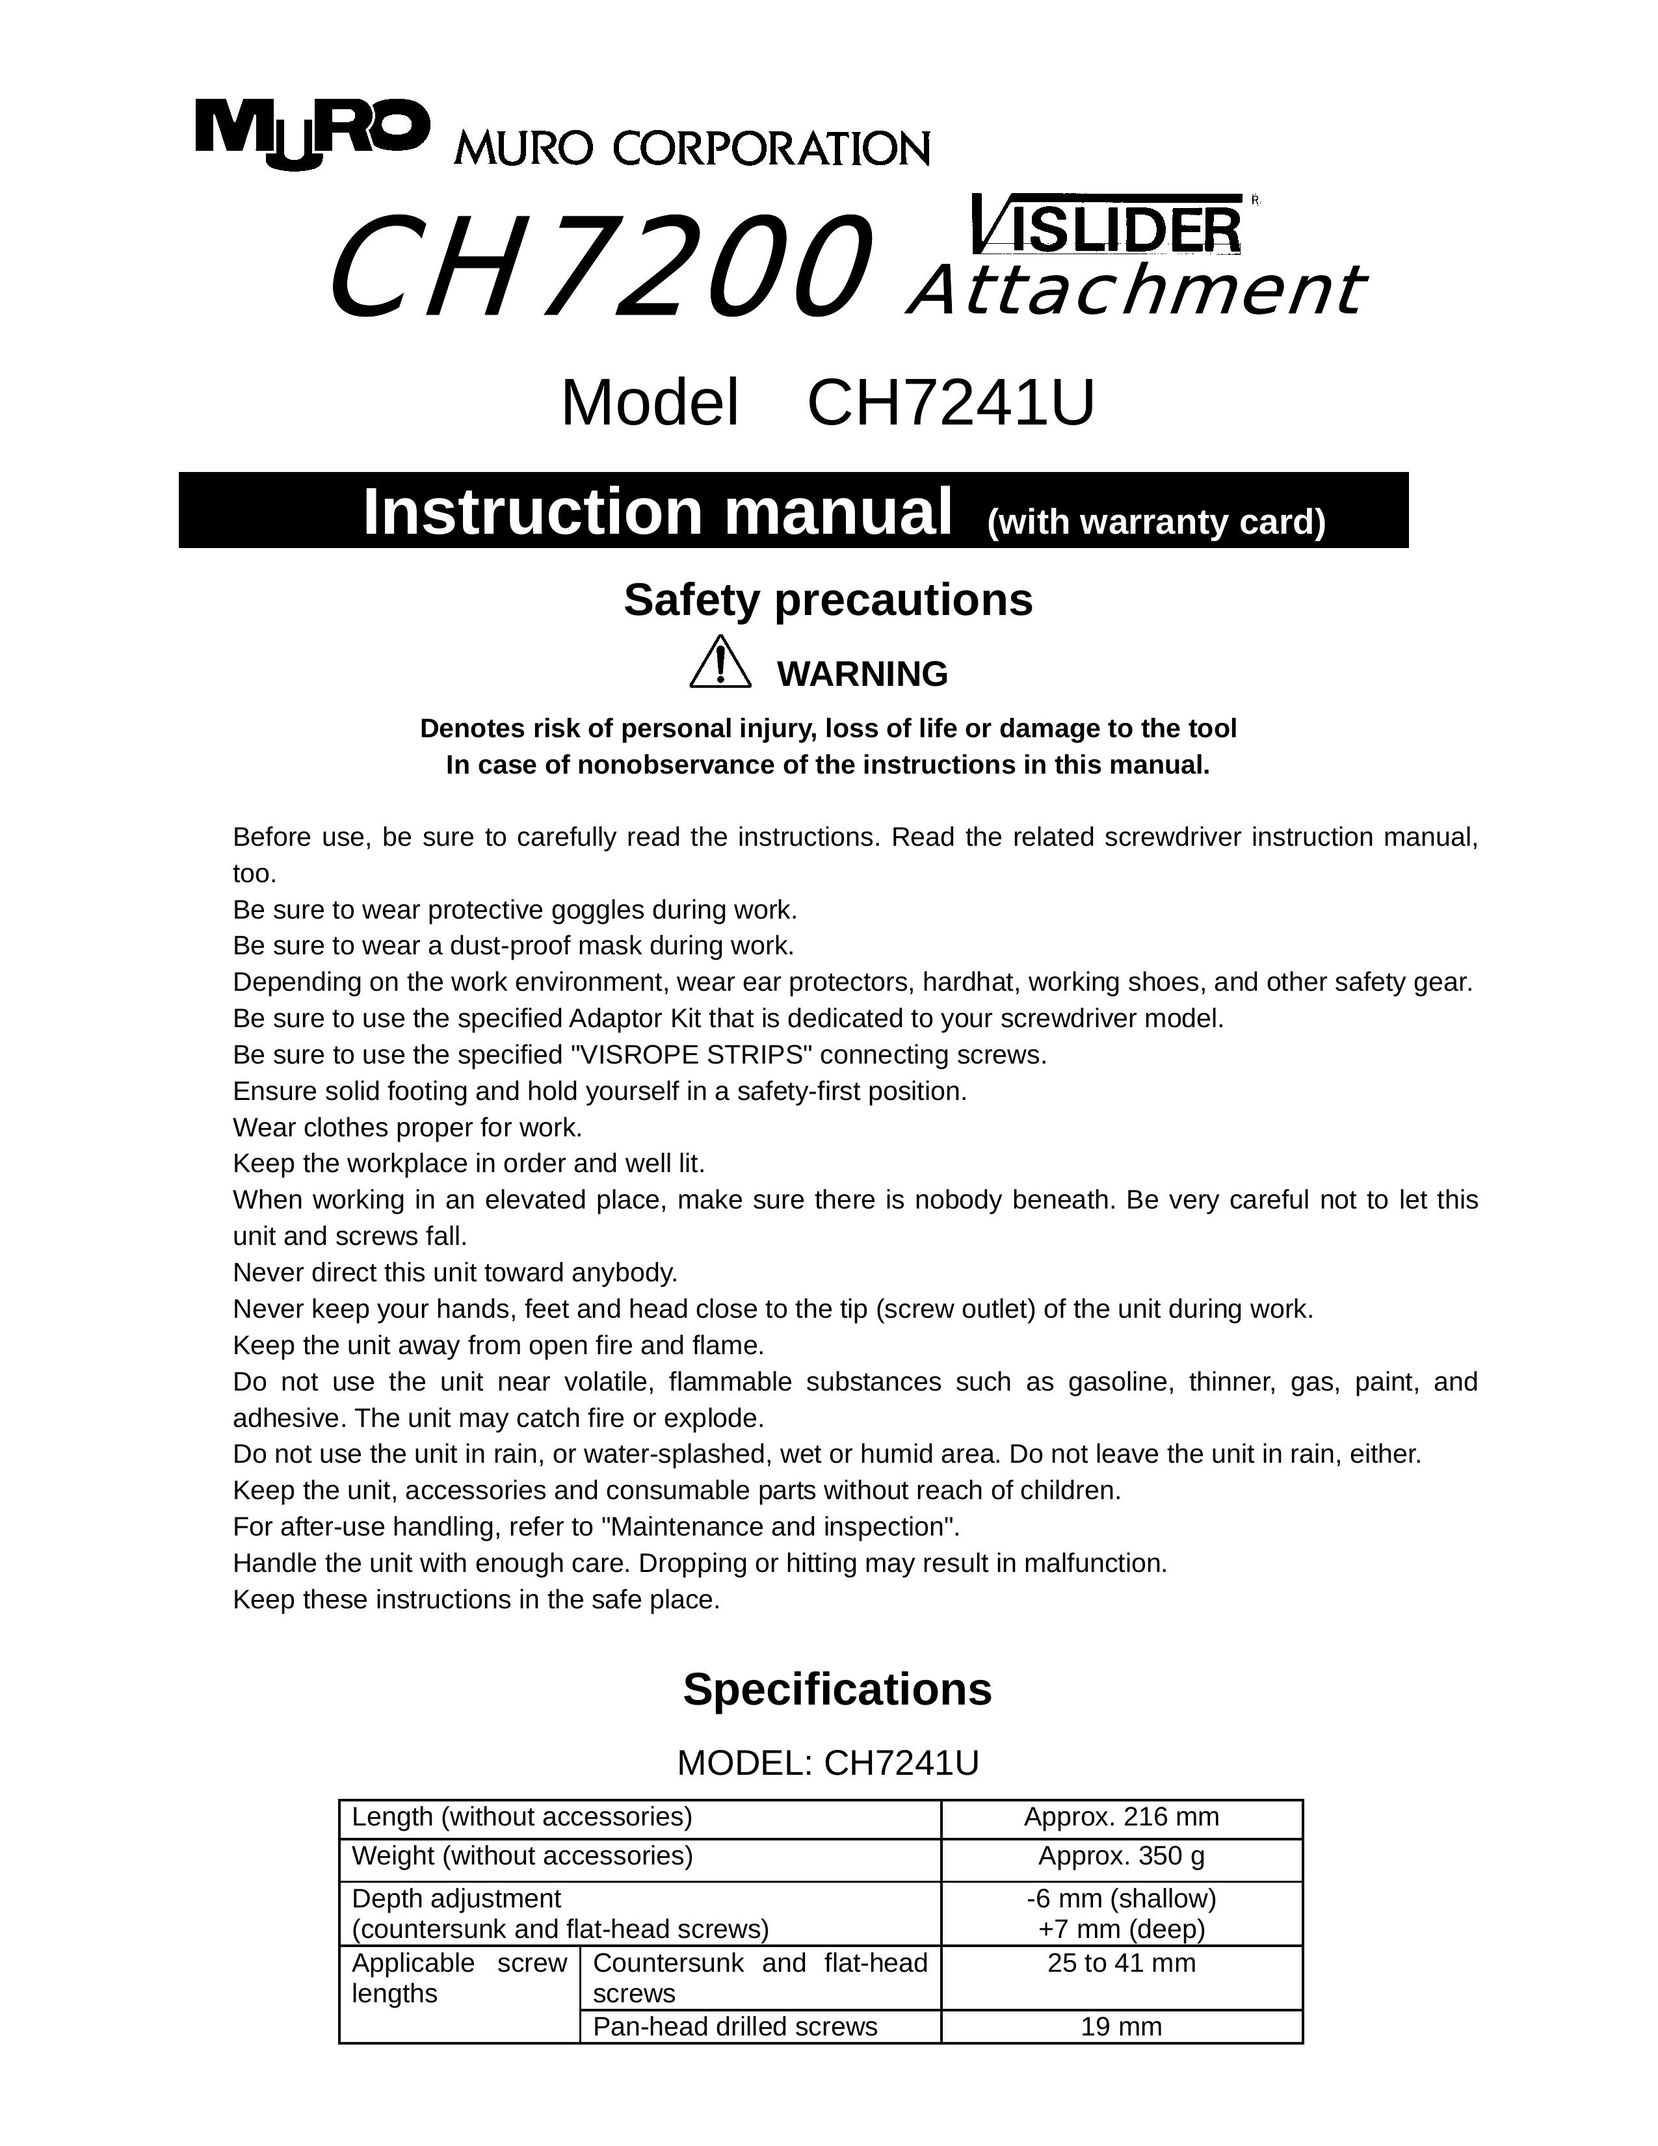 MURO CH7241U Power Screwdriver User Manual